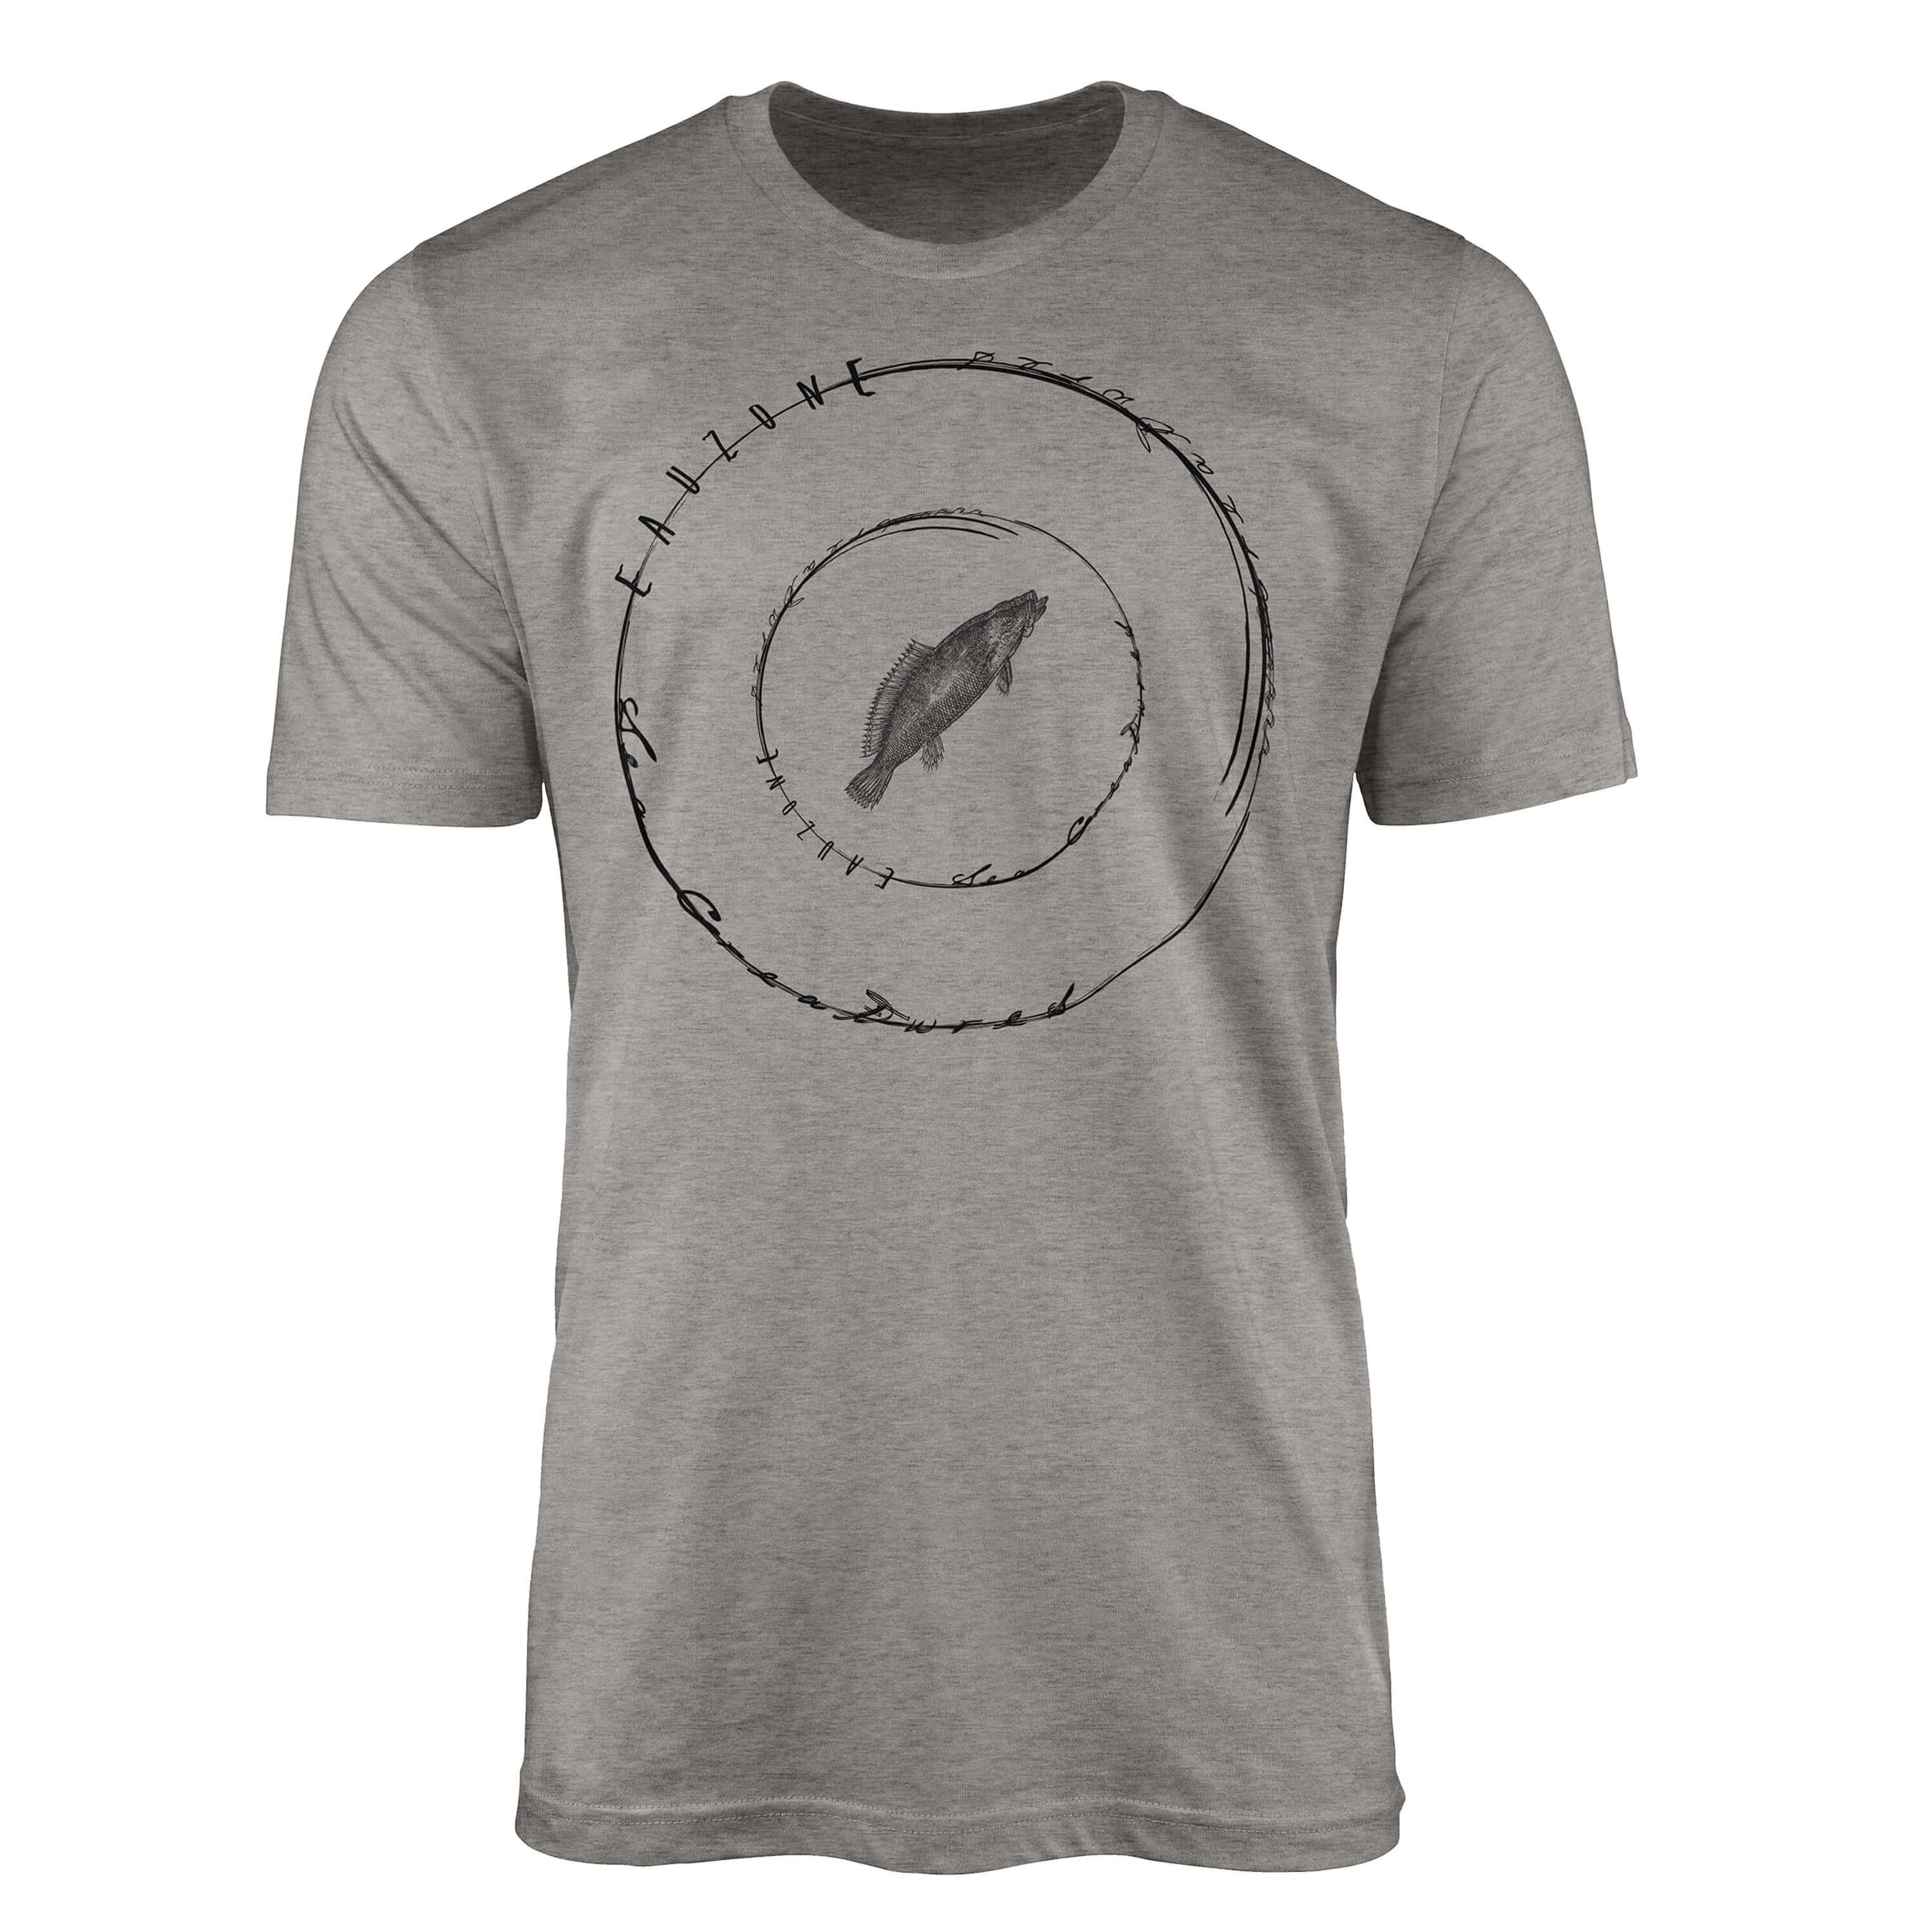 Struktur Creatures, und Sinus feine / T-Shirt T-Shirt Fische Sea sportlicher Tiefsee Ash Serie: Art 016 Schnitt Sea -